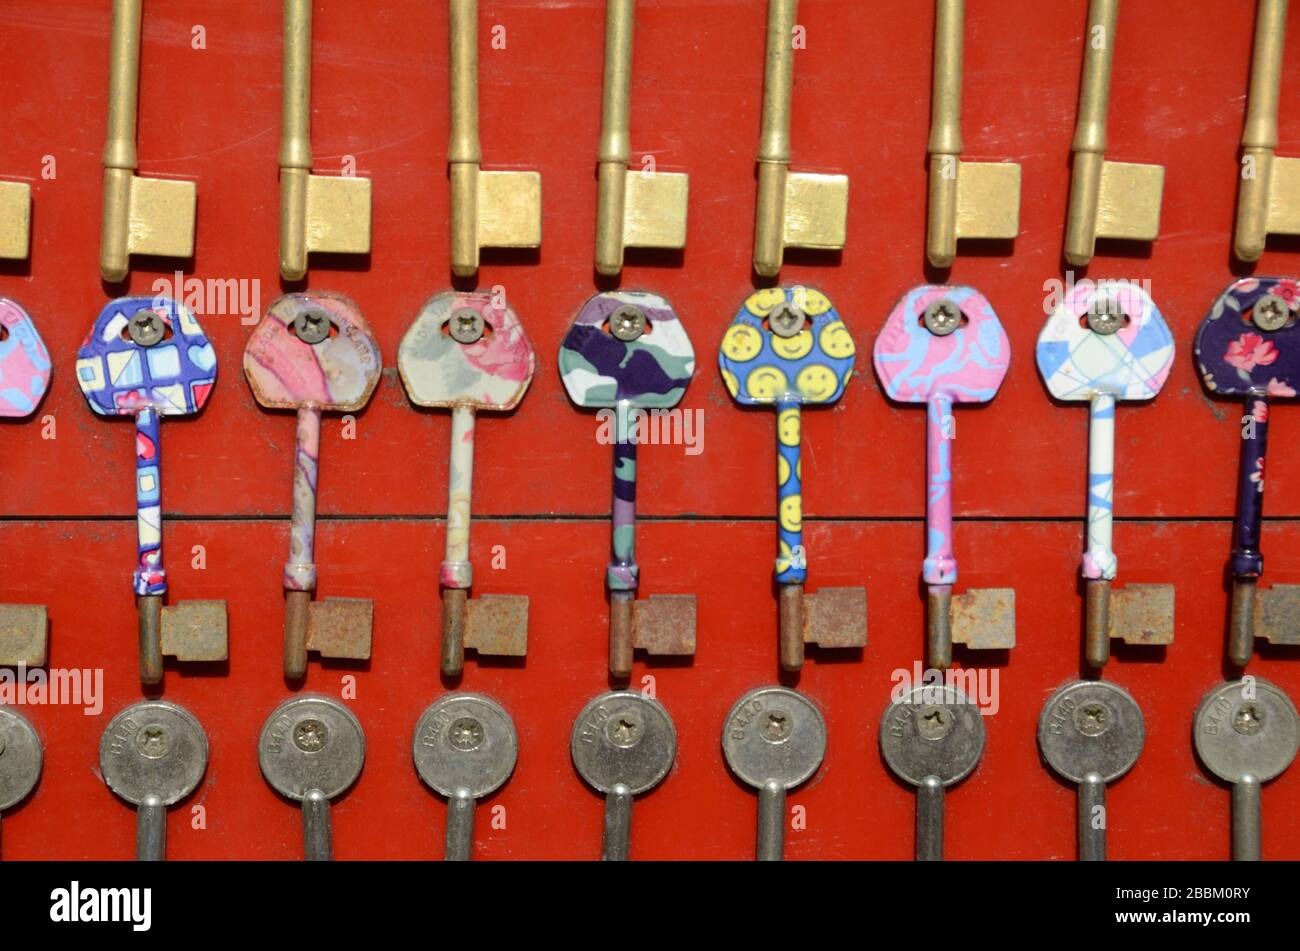 Arrangement or Display of Blank Keys or Key Display Stock Photo